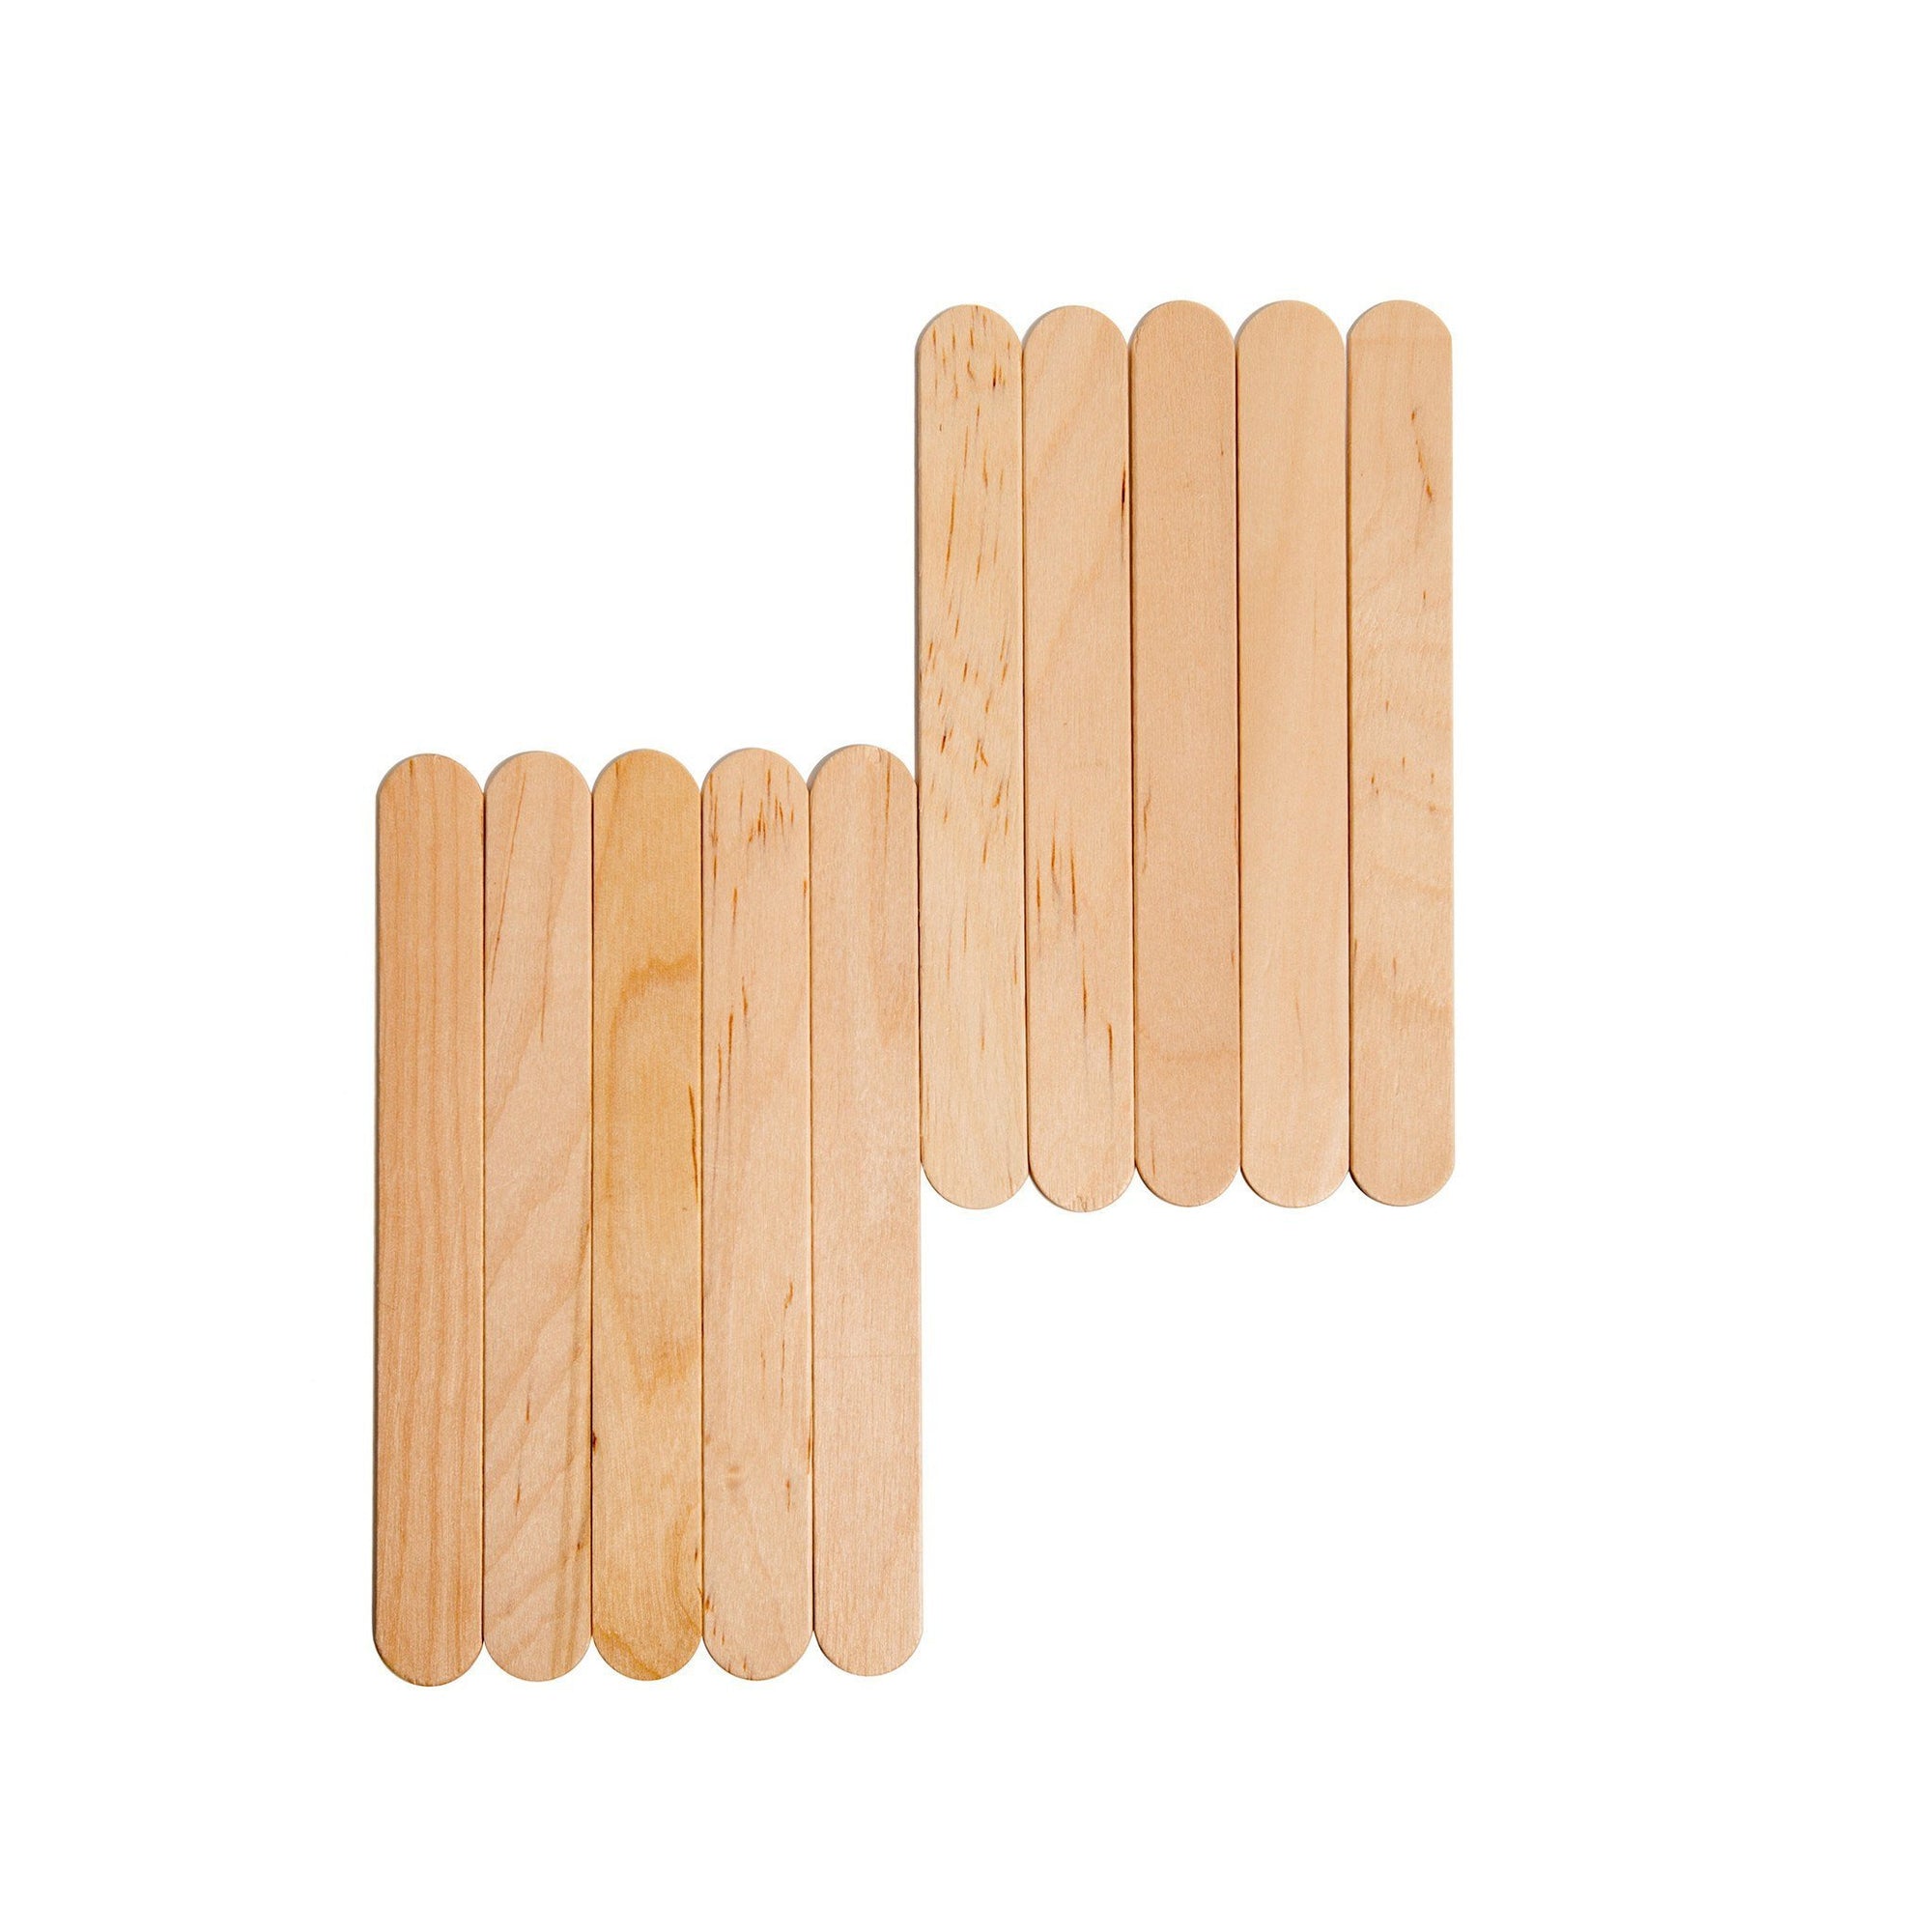 6” in Wooden Spatulas